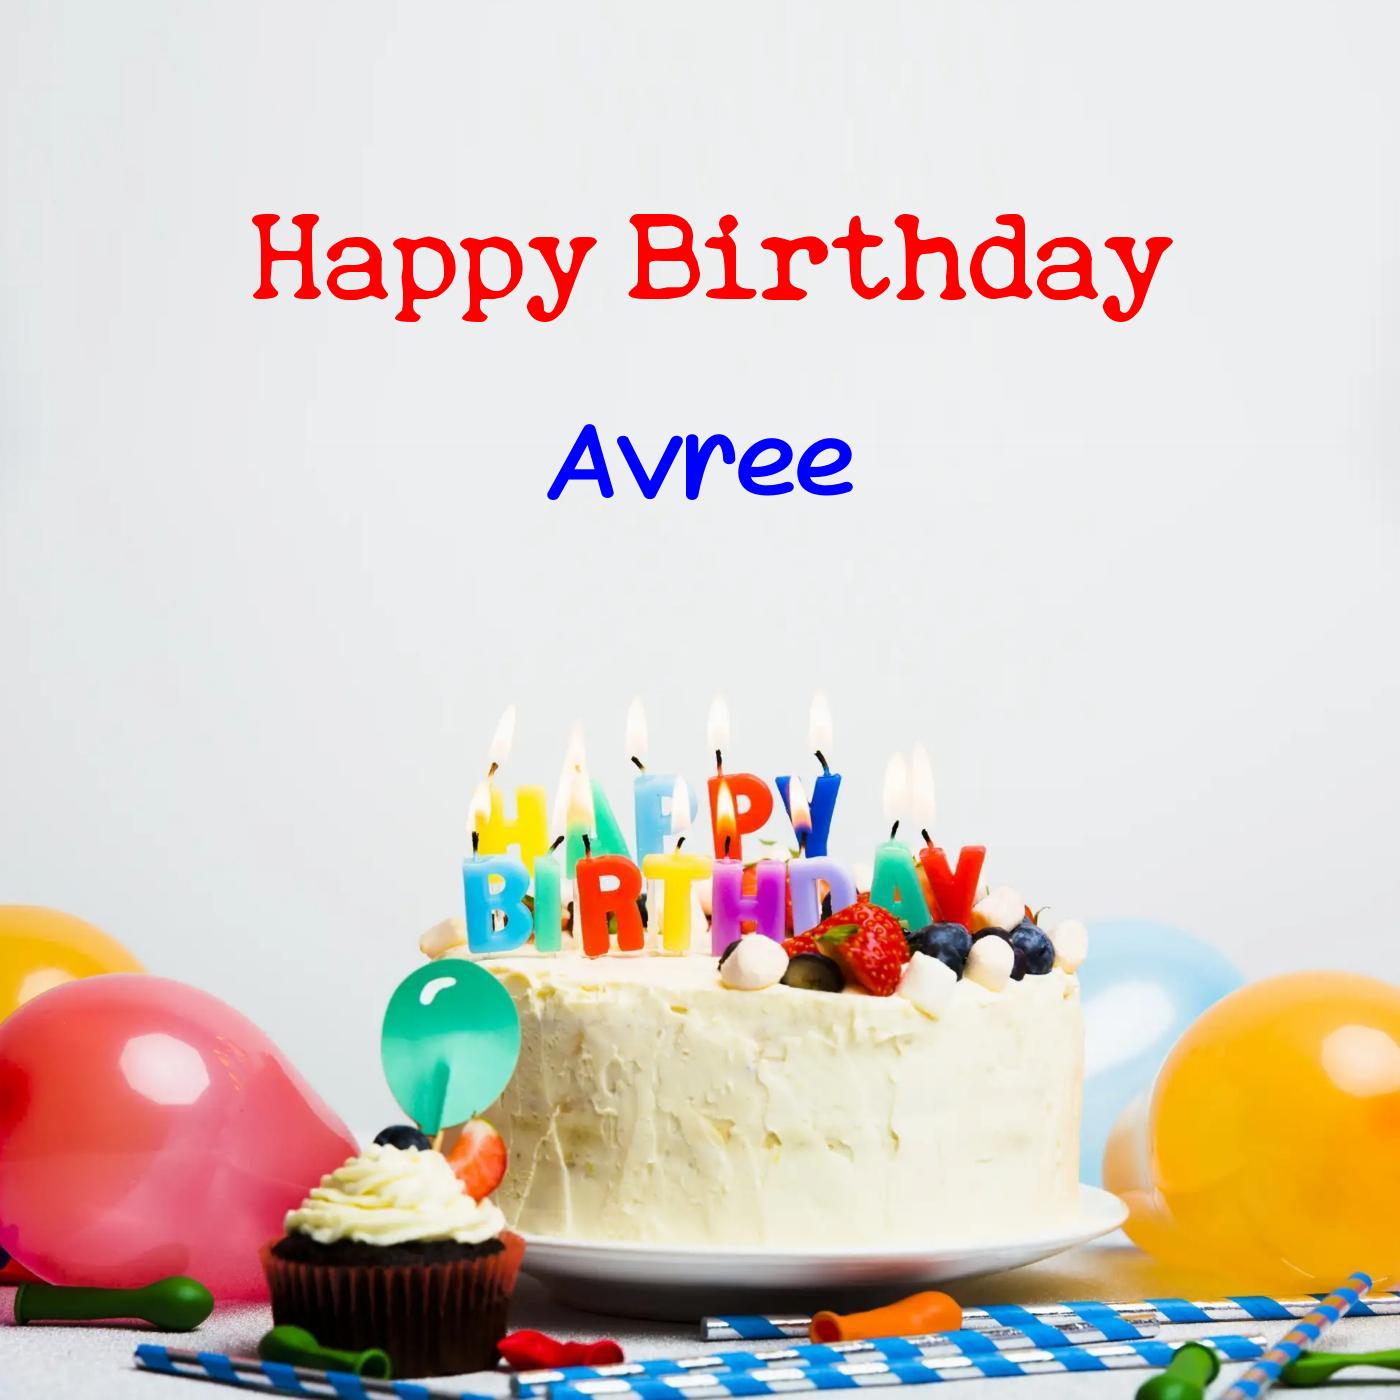 Happy Birthday Avree Cake Balloons Card